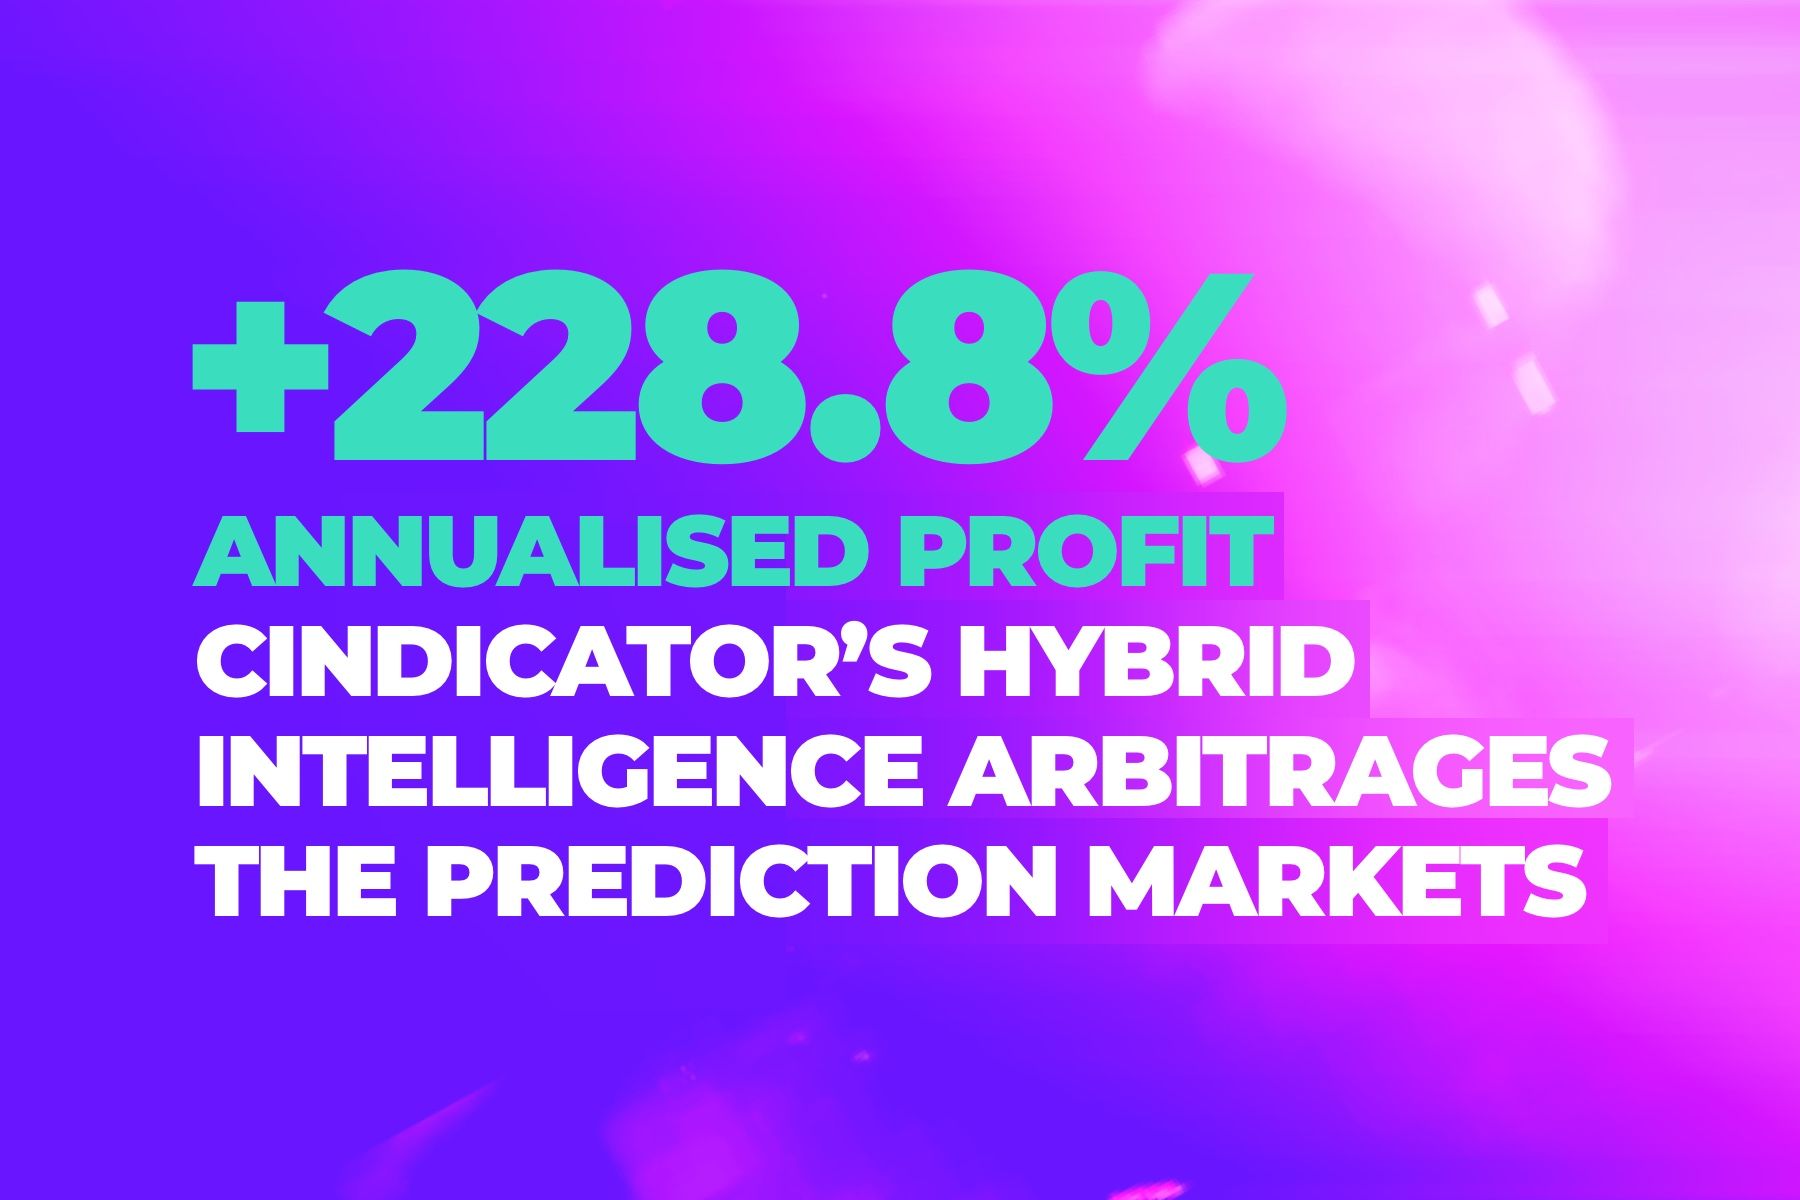 Cindicator’s Hybrid Intelligence arbitrages the prediction markets: +228.8% annualised profit